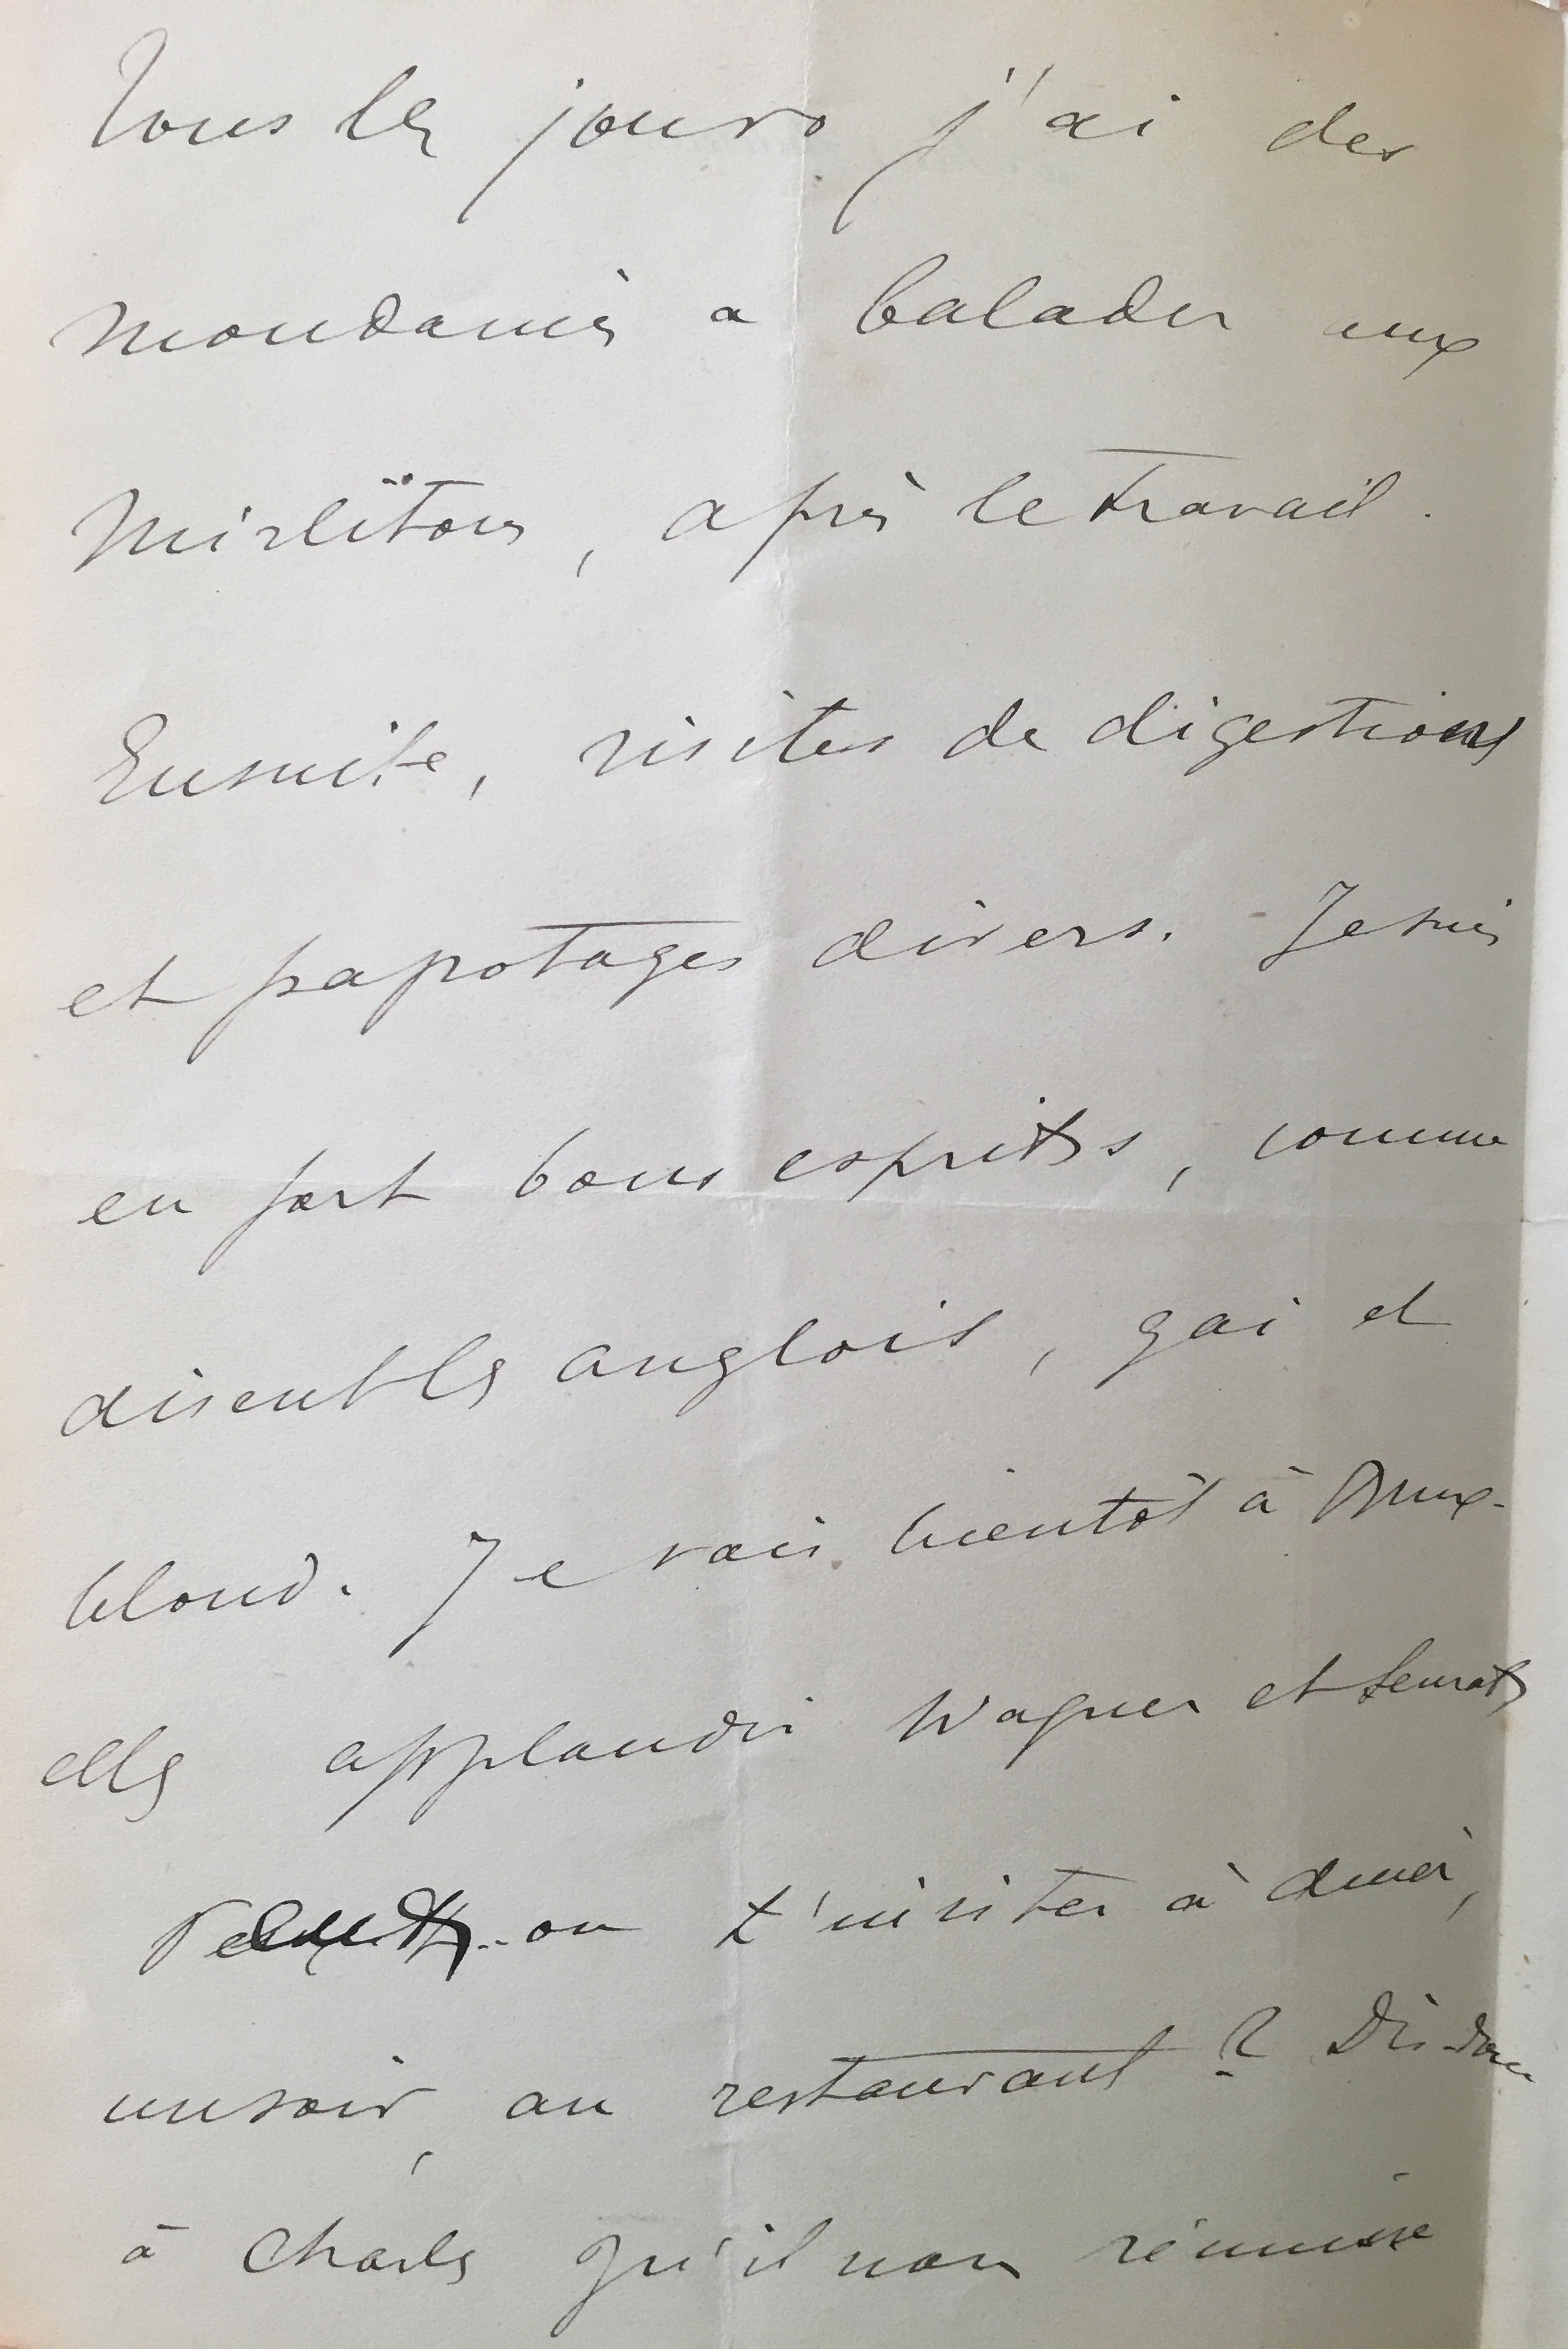 Lettre de Jacques-Emile Blanche à Ary Renan, 15 février 1887